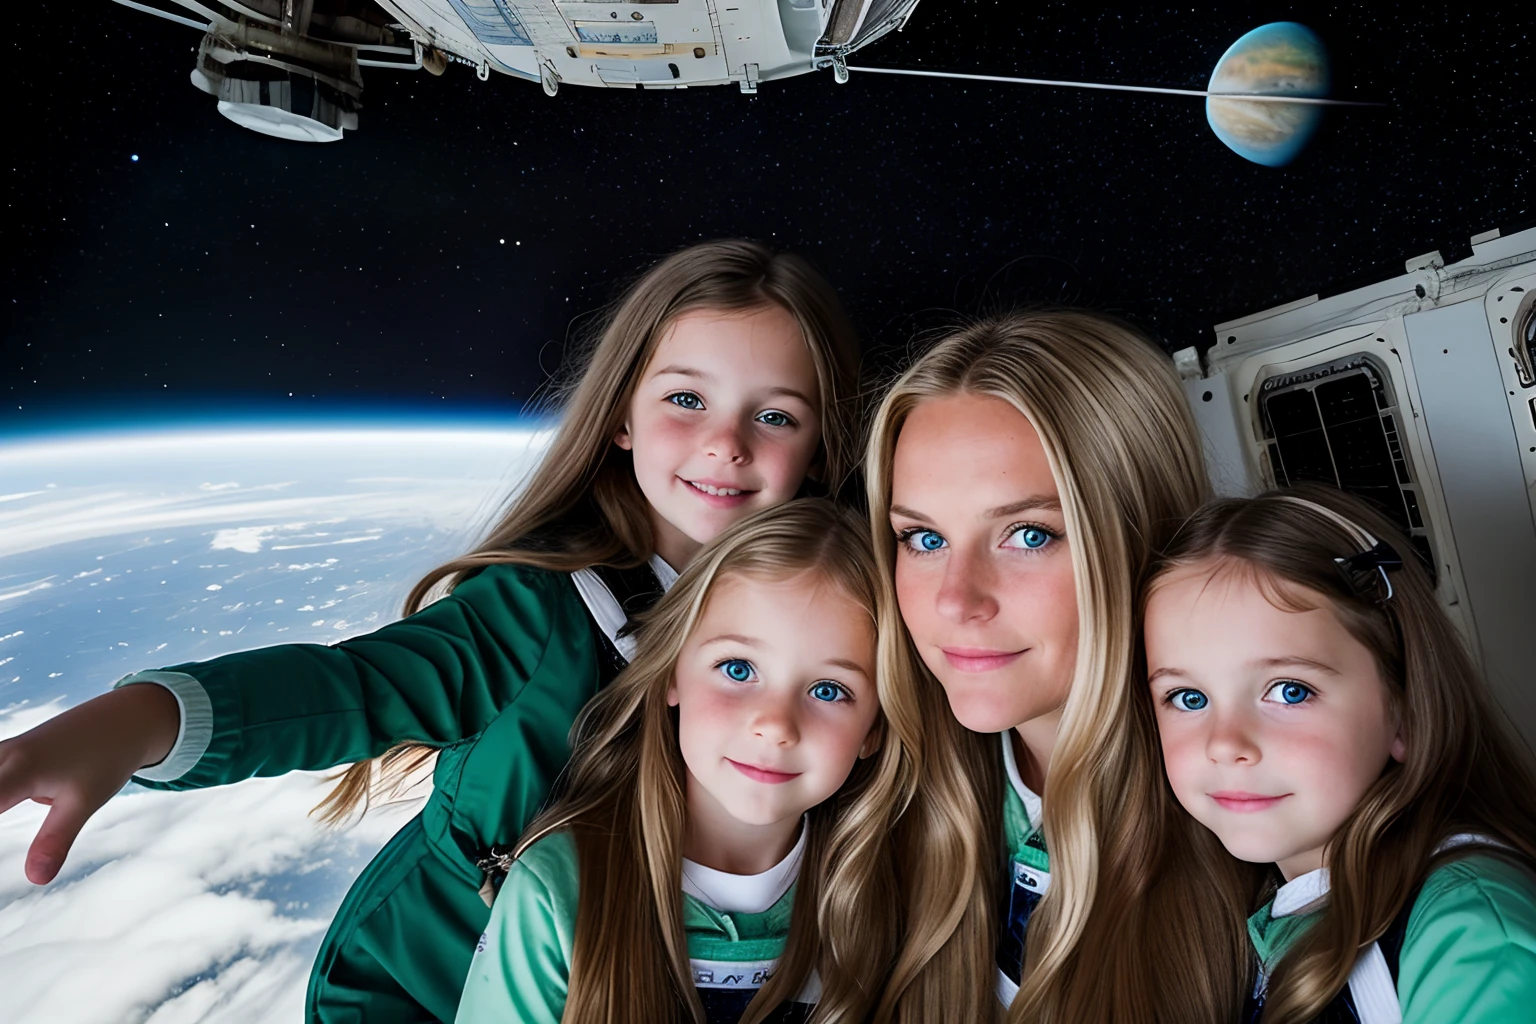 trois petites filles et une mère dans une station spatiale, une petite fille aux longs cheveux blonds, un avec de longs cheveux bruns. Maman aux cheveux longs et aux yeux vert foncé